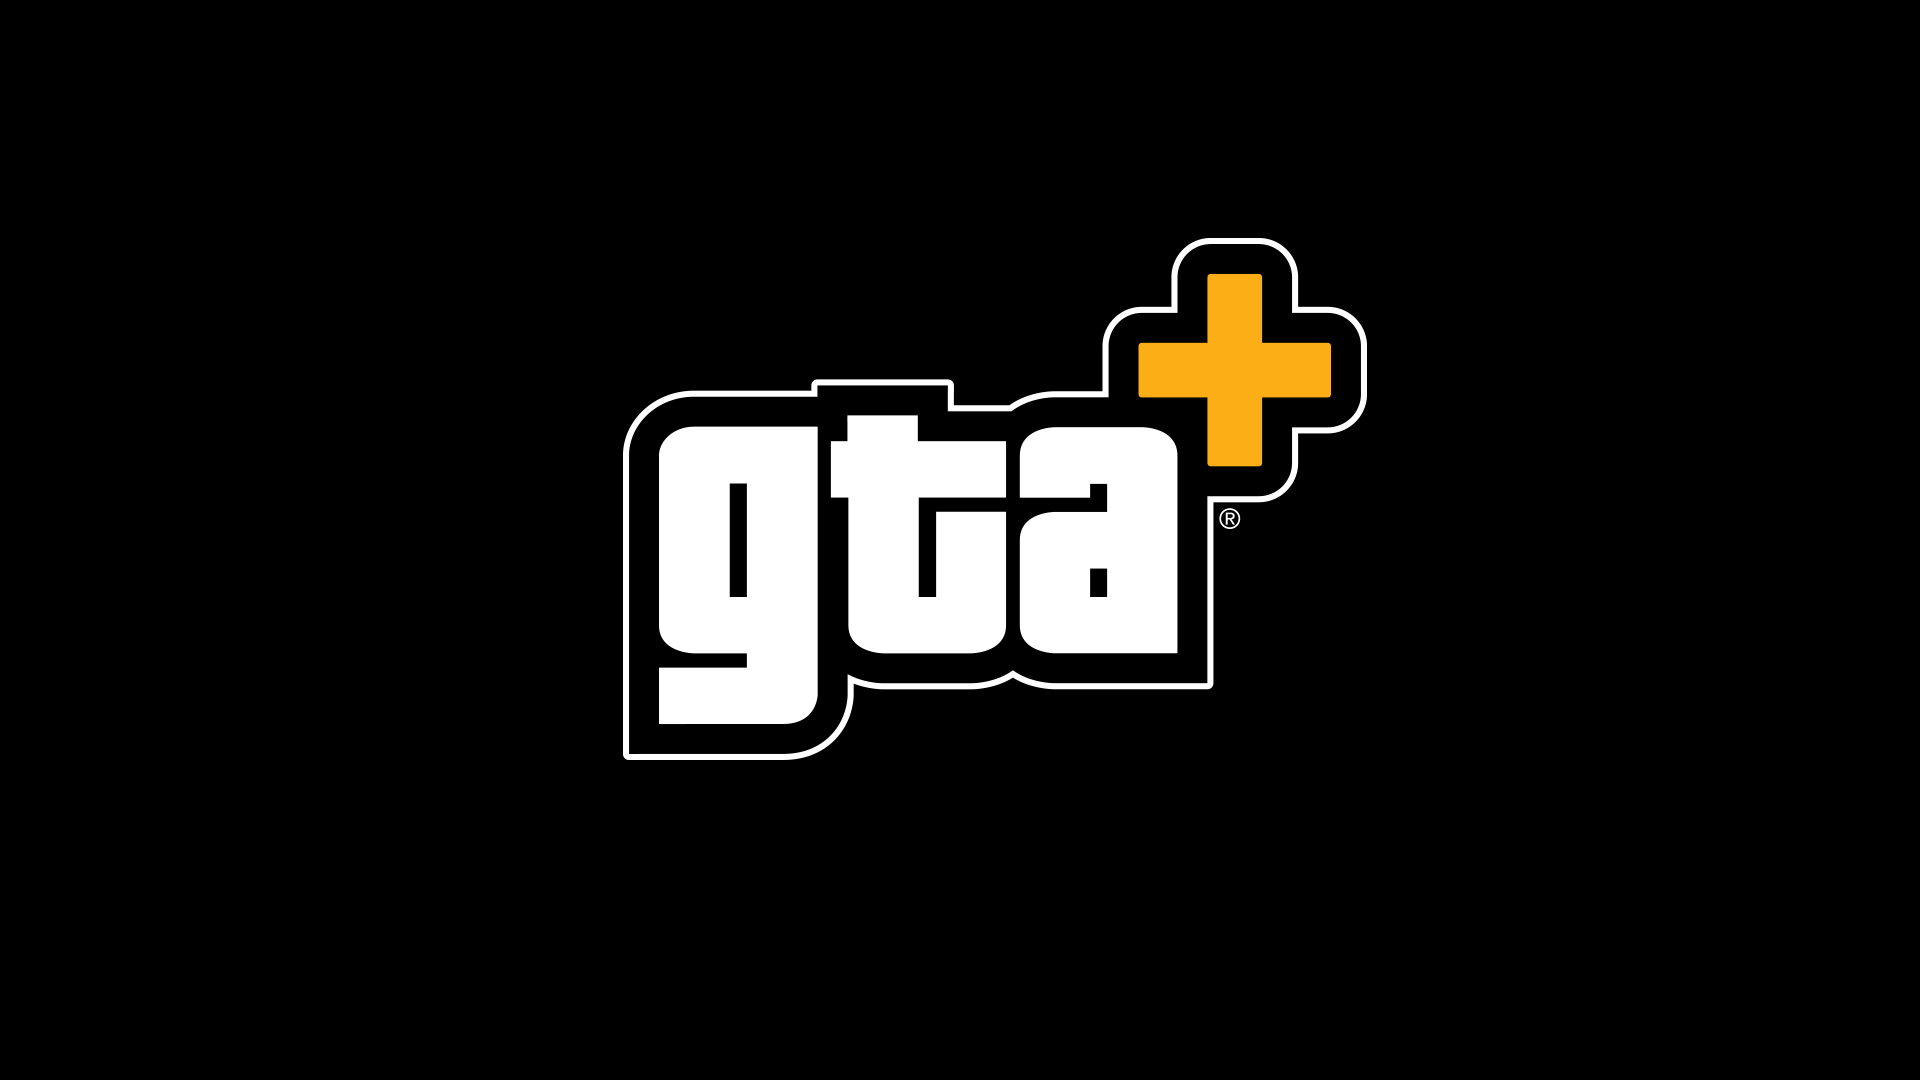 Para más información sobre las últimas ventajas de GTA+, visita https://rockstargames.com/gtaplus.